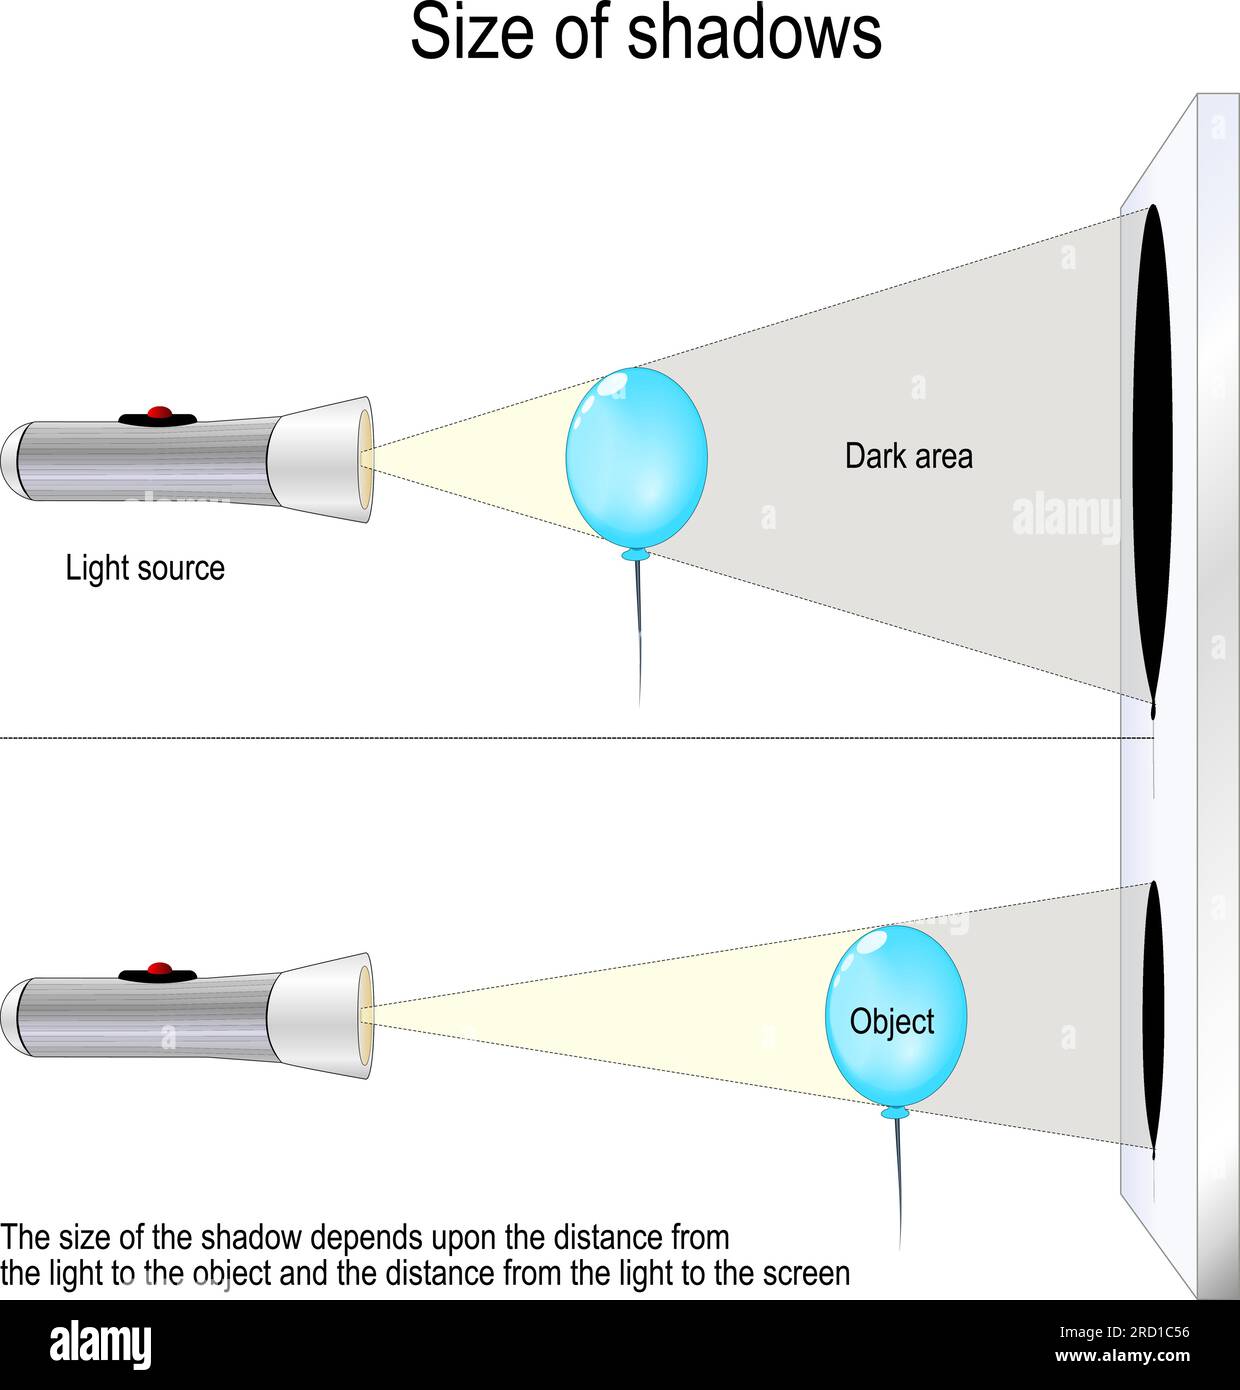 Taille des ombres. expérience scientifique avec un ballon et une lampe de poche. La taille de l'ombre dépend de la distance entre la lumière et l'objet Illustration de Vecteur